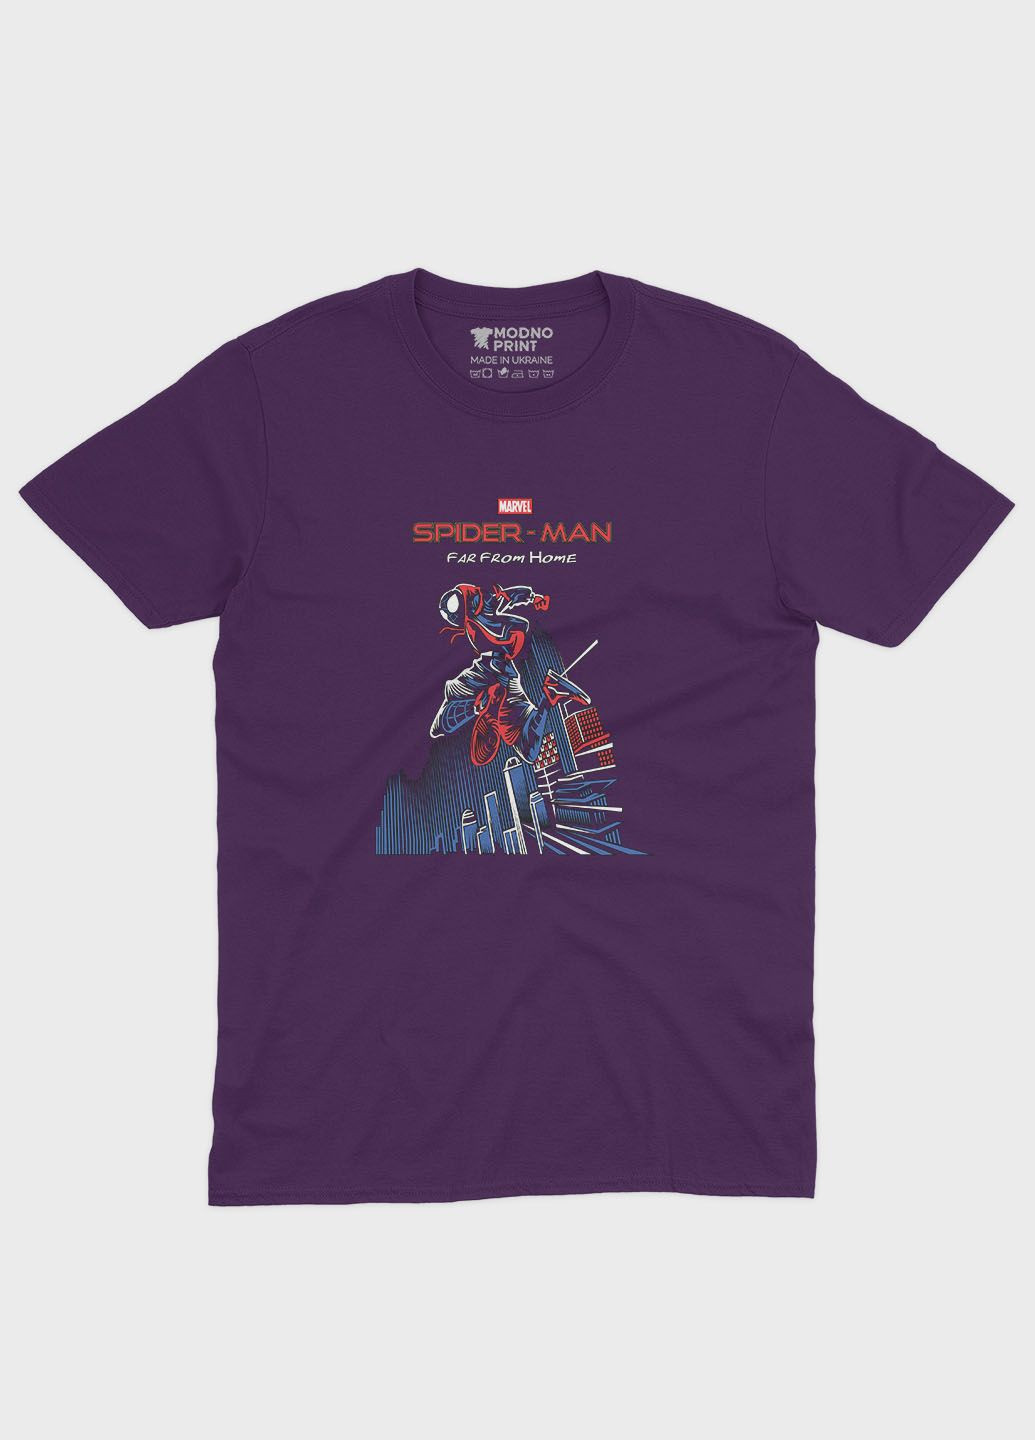 Фиолетовая демисезонная футболка для девочки с принтом супергероя - человек-паук (ts001-1-dby-006-014-041-g) Modno